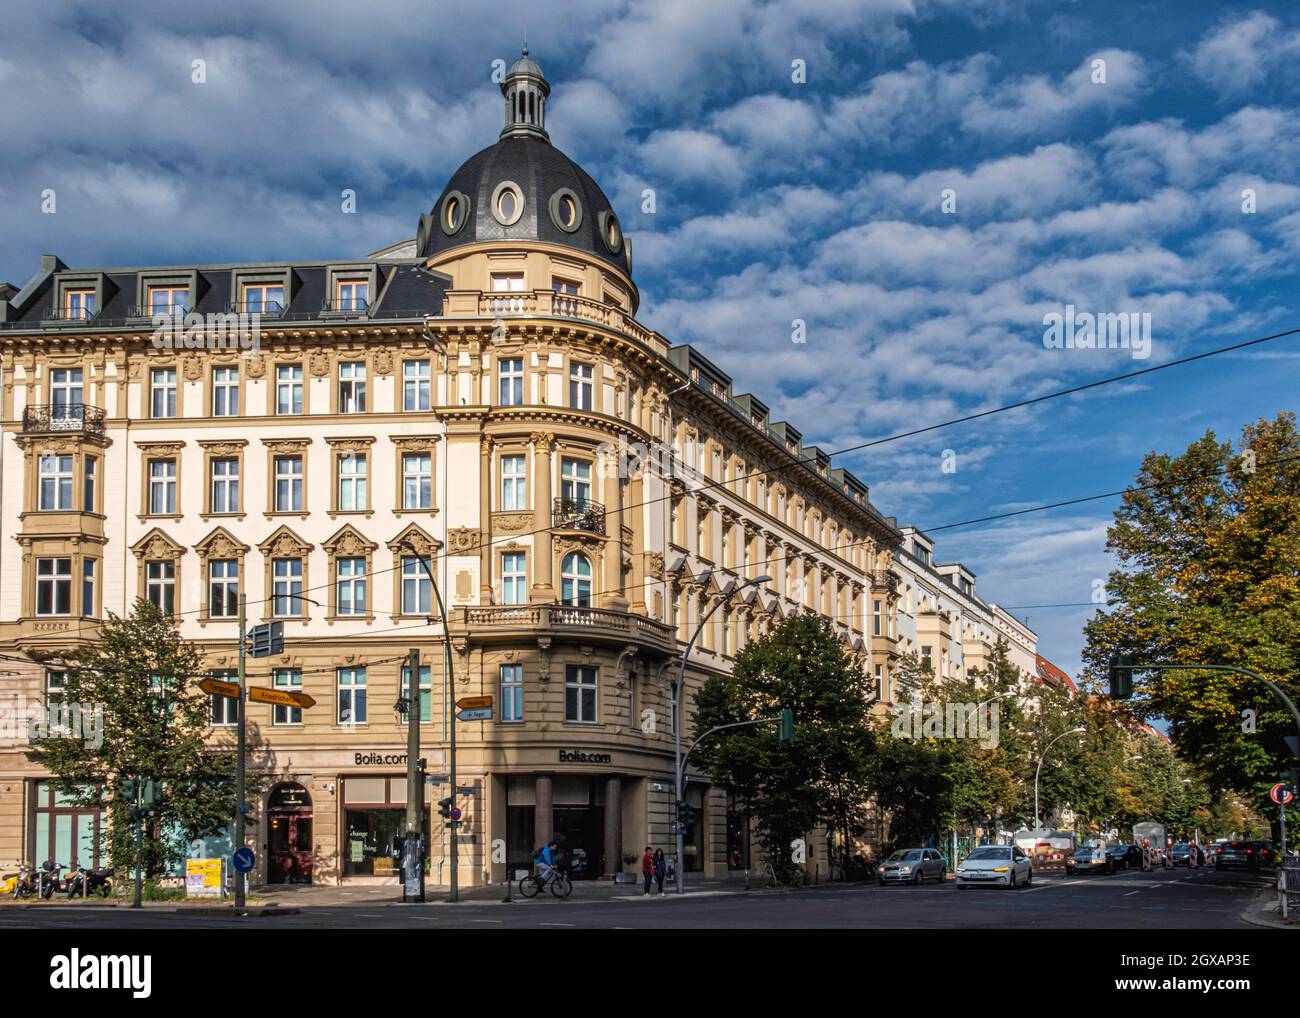 Historisches denkmalgeschütztes Apartmentgebäude auf Cnr. Torstrasse & Chausseestraße, Mitte, Berlin. Außen und Fassade Stockfoto